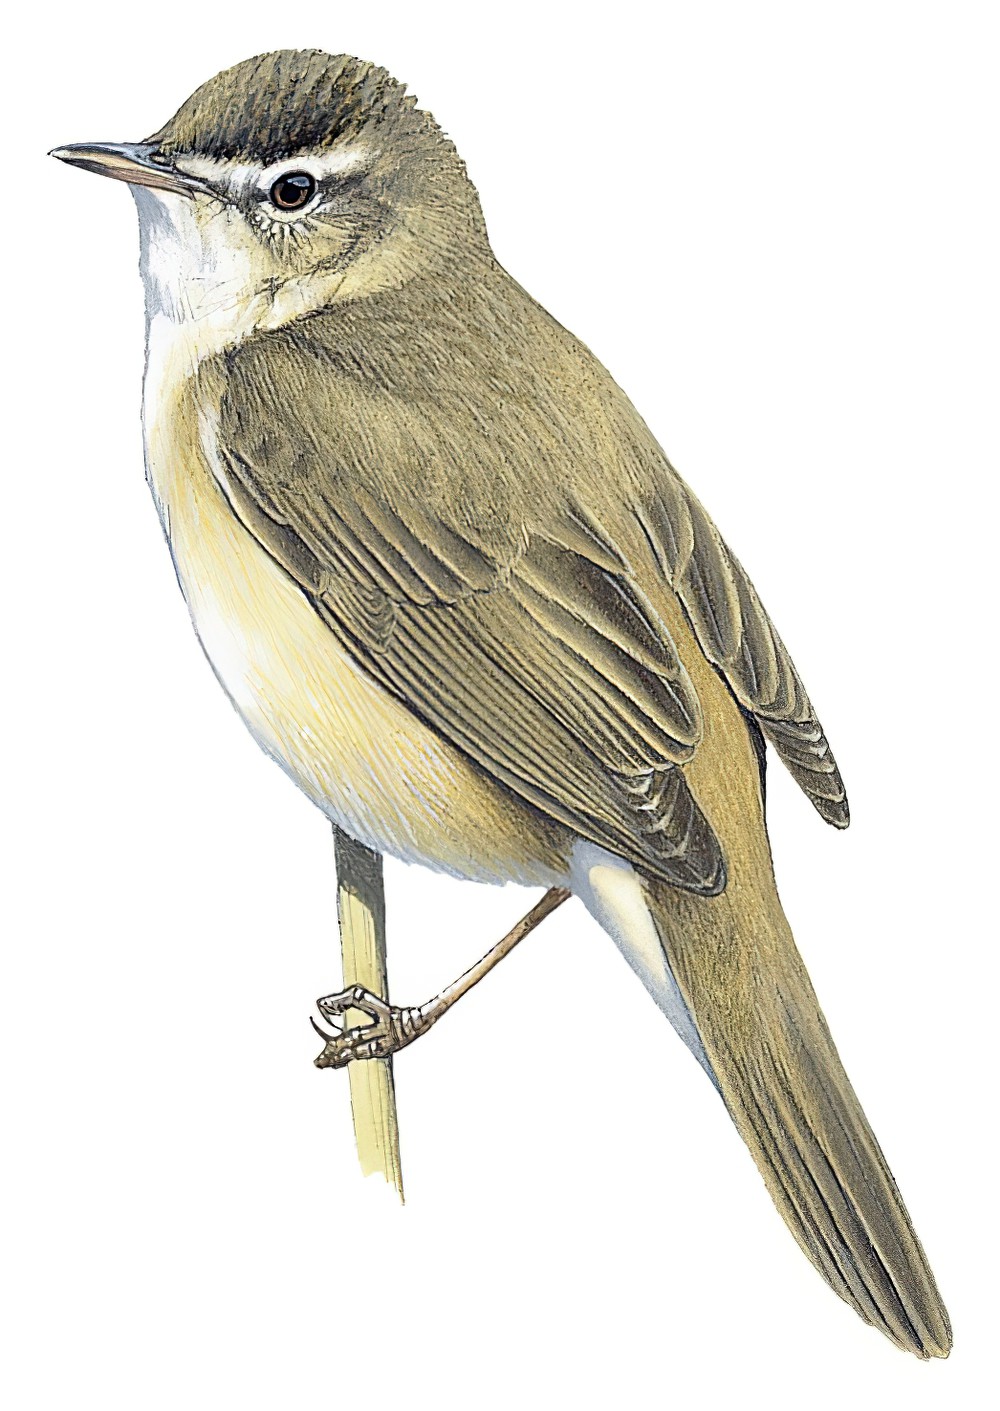 Manchurian Reed Warbler / Acrocephalus tangorum